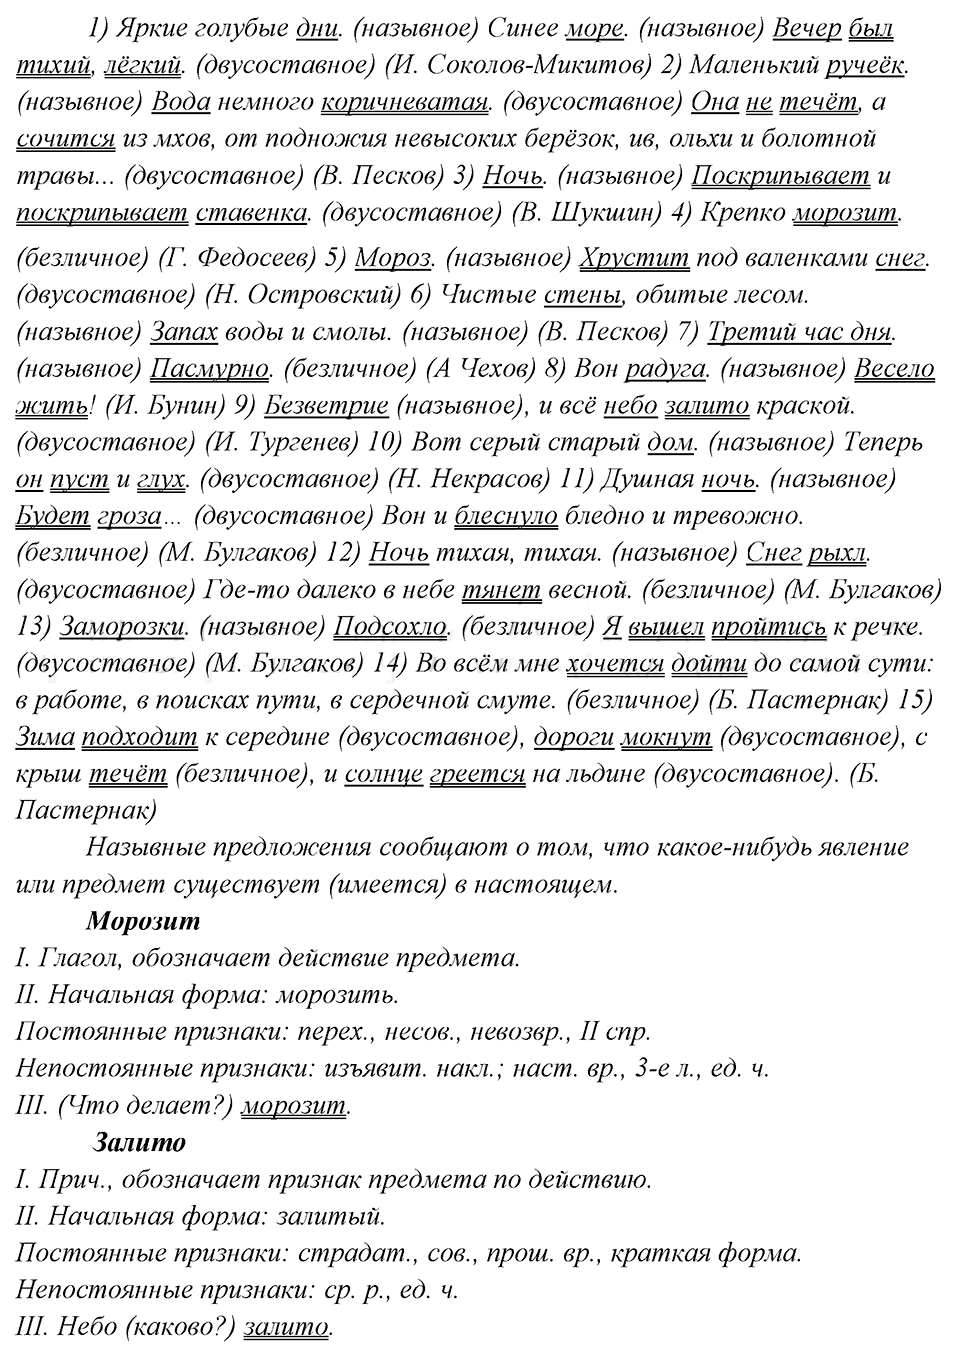 разбор слов морозит, залито упражнение 281 русский язык 8 класс